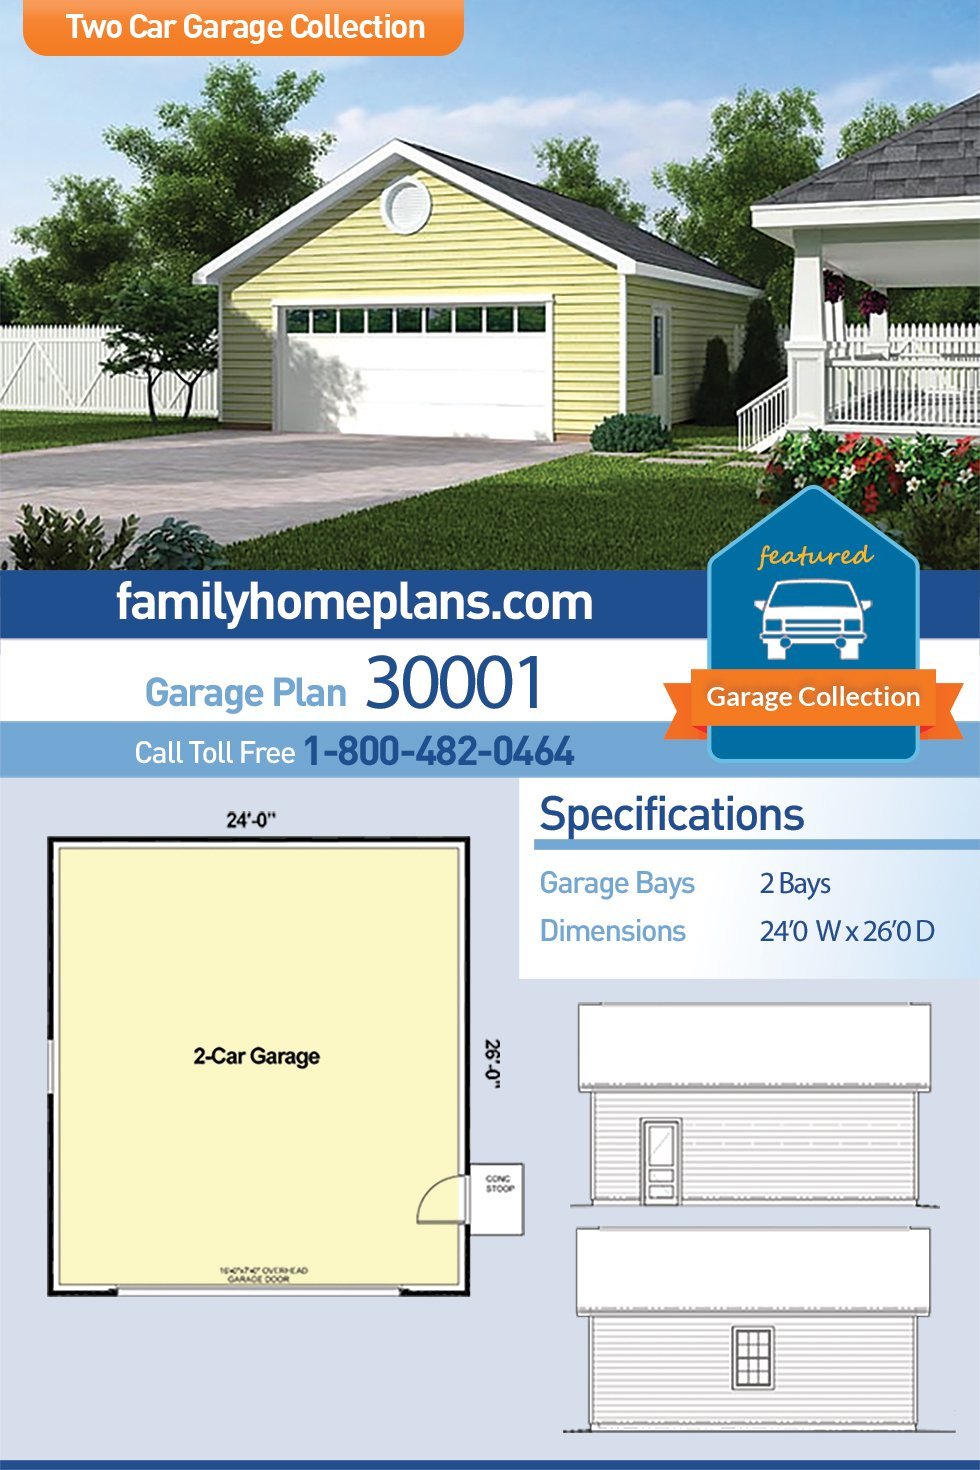 Garage Plan 30001 - 2 Car Garage